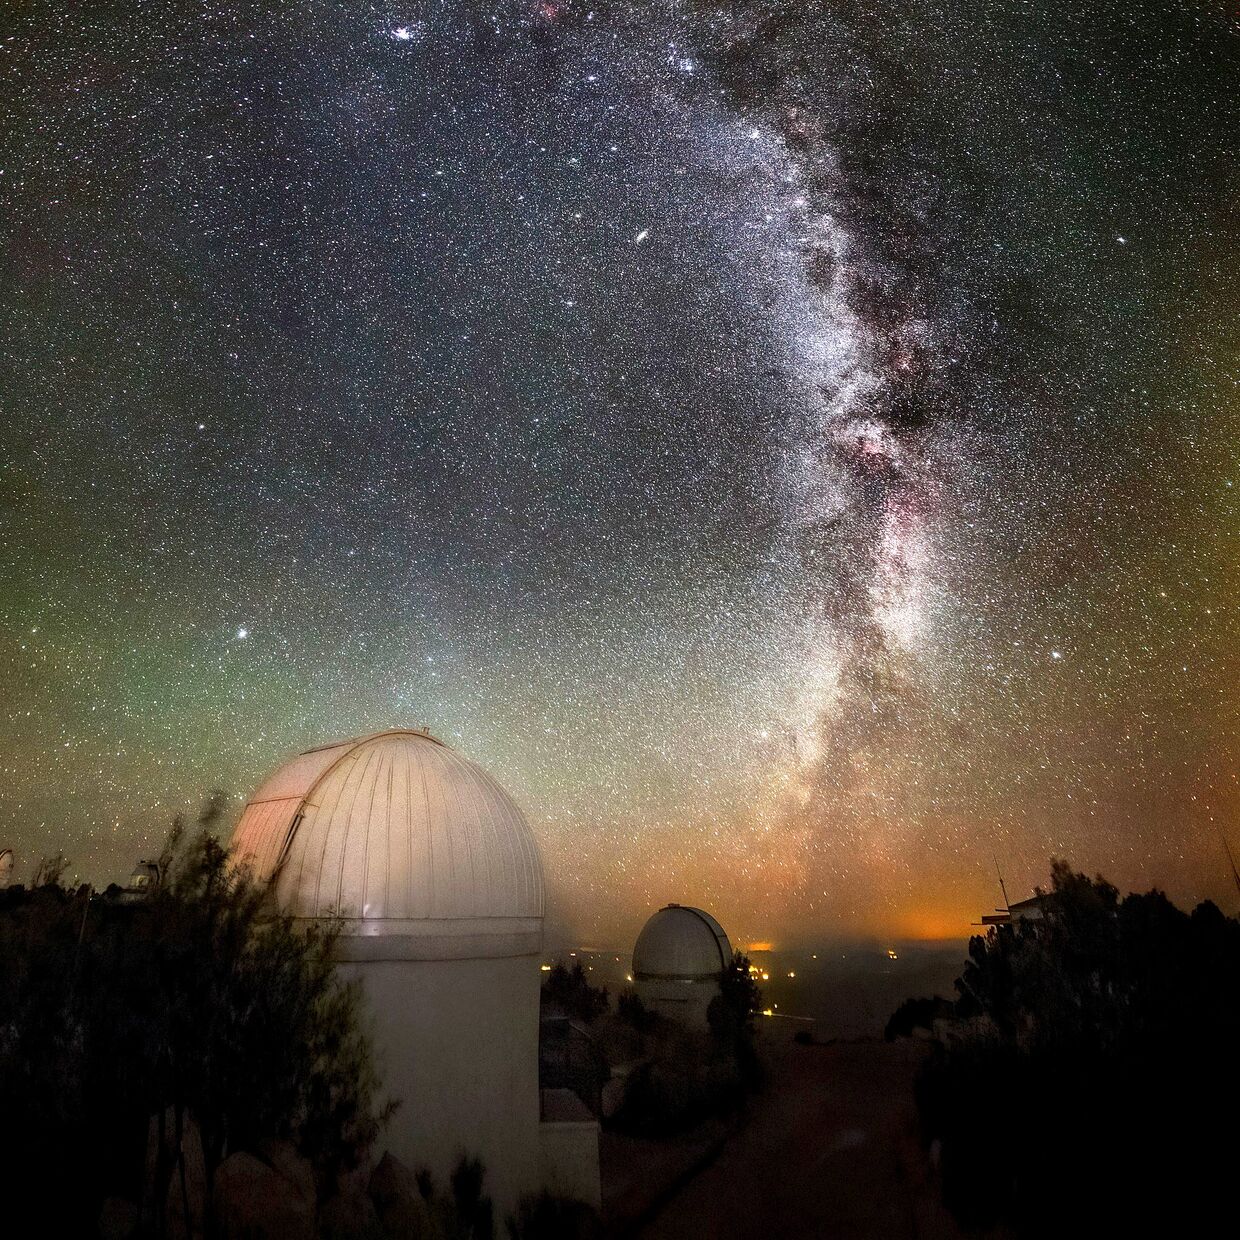 Национальная обсерватория Китт-Пик